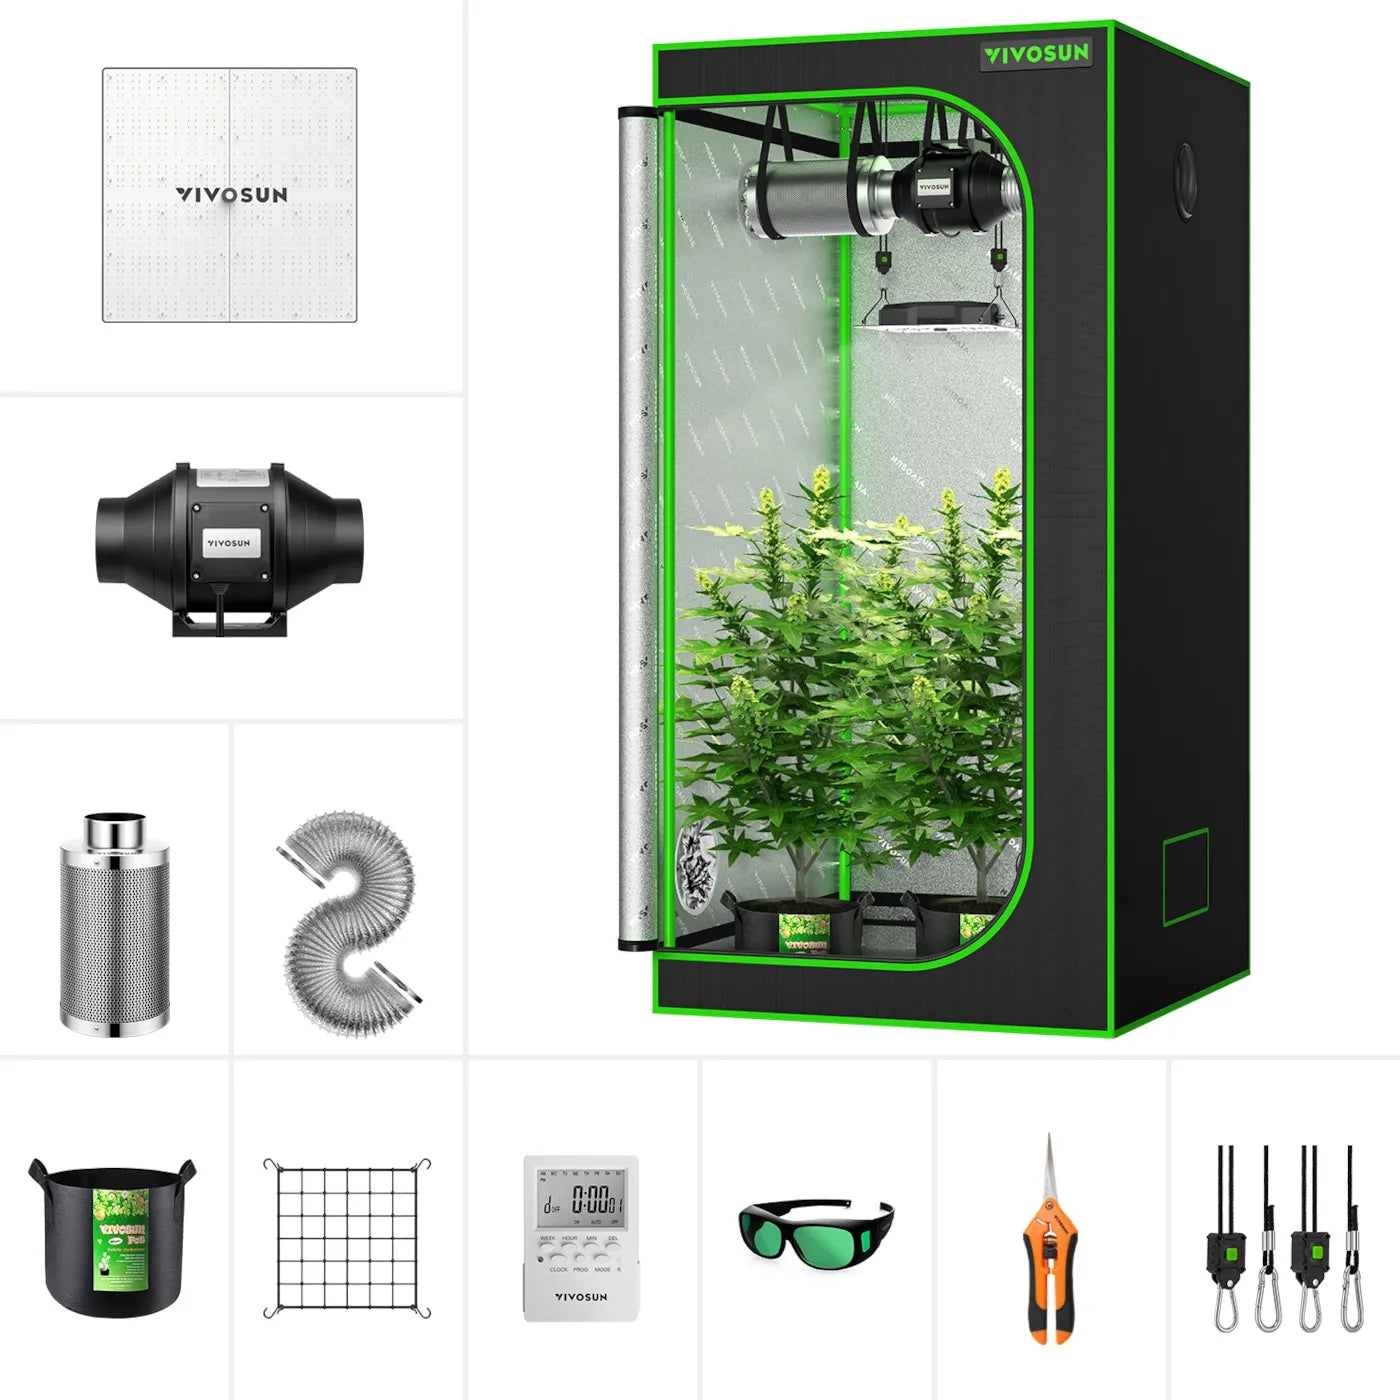 VIVOSUN GIY 2.7 x 2.7 ft. Complete Grow Kit with VS1000 LED Grow Light, 32